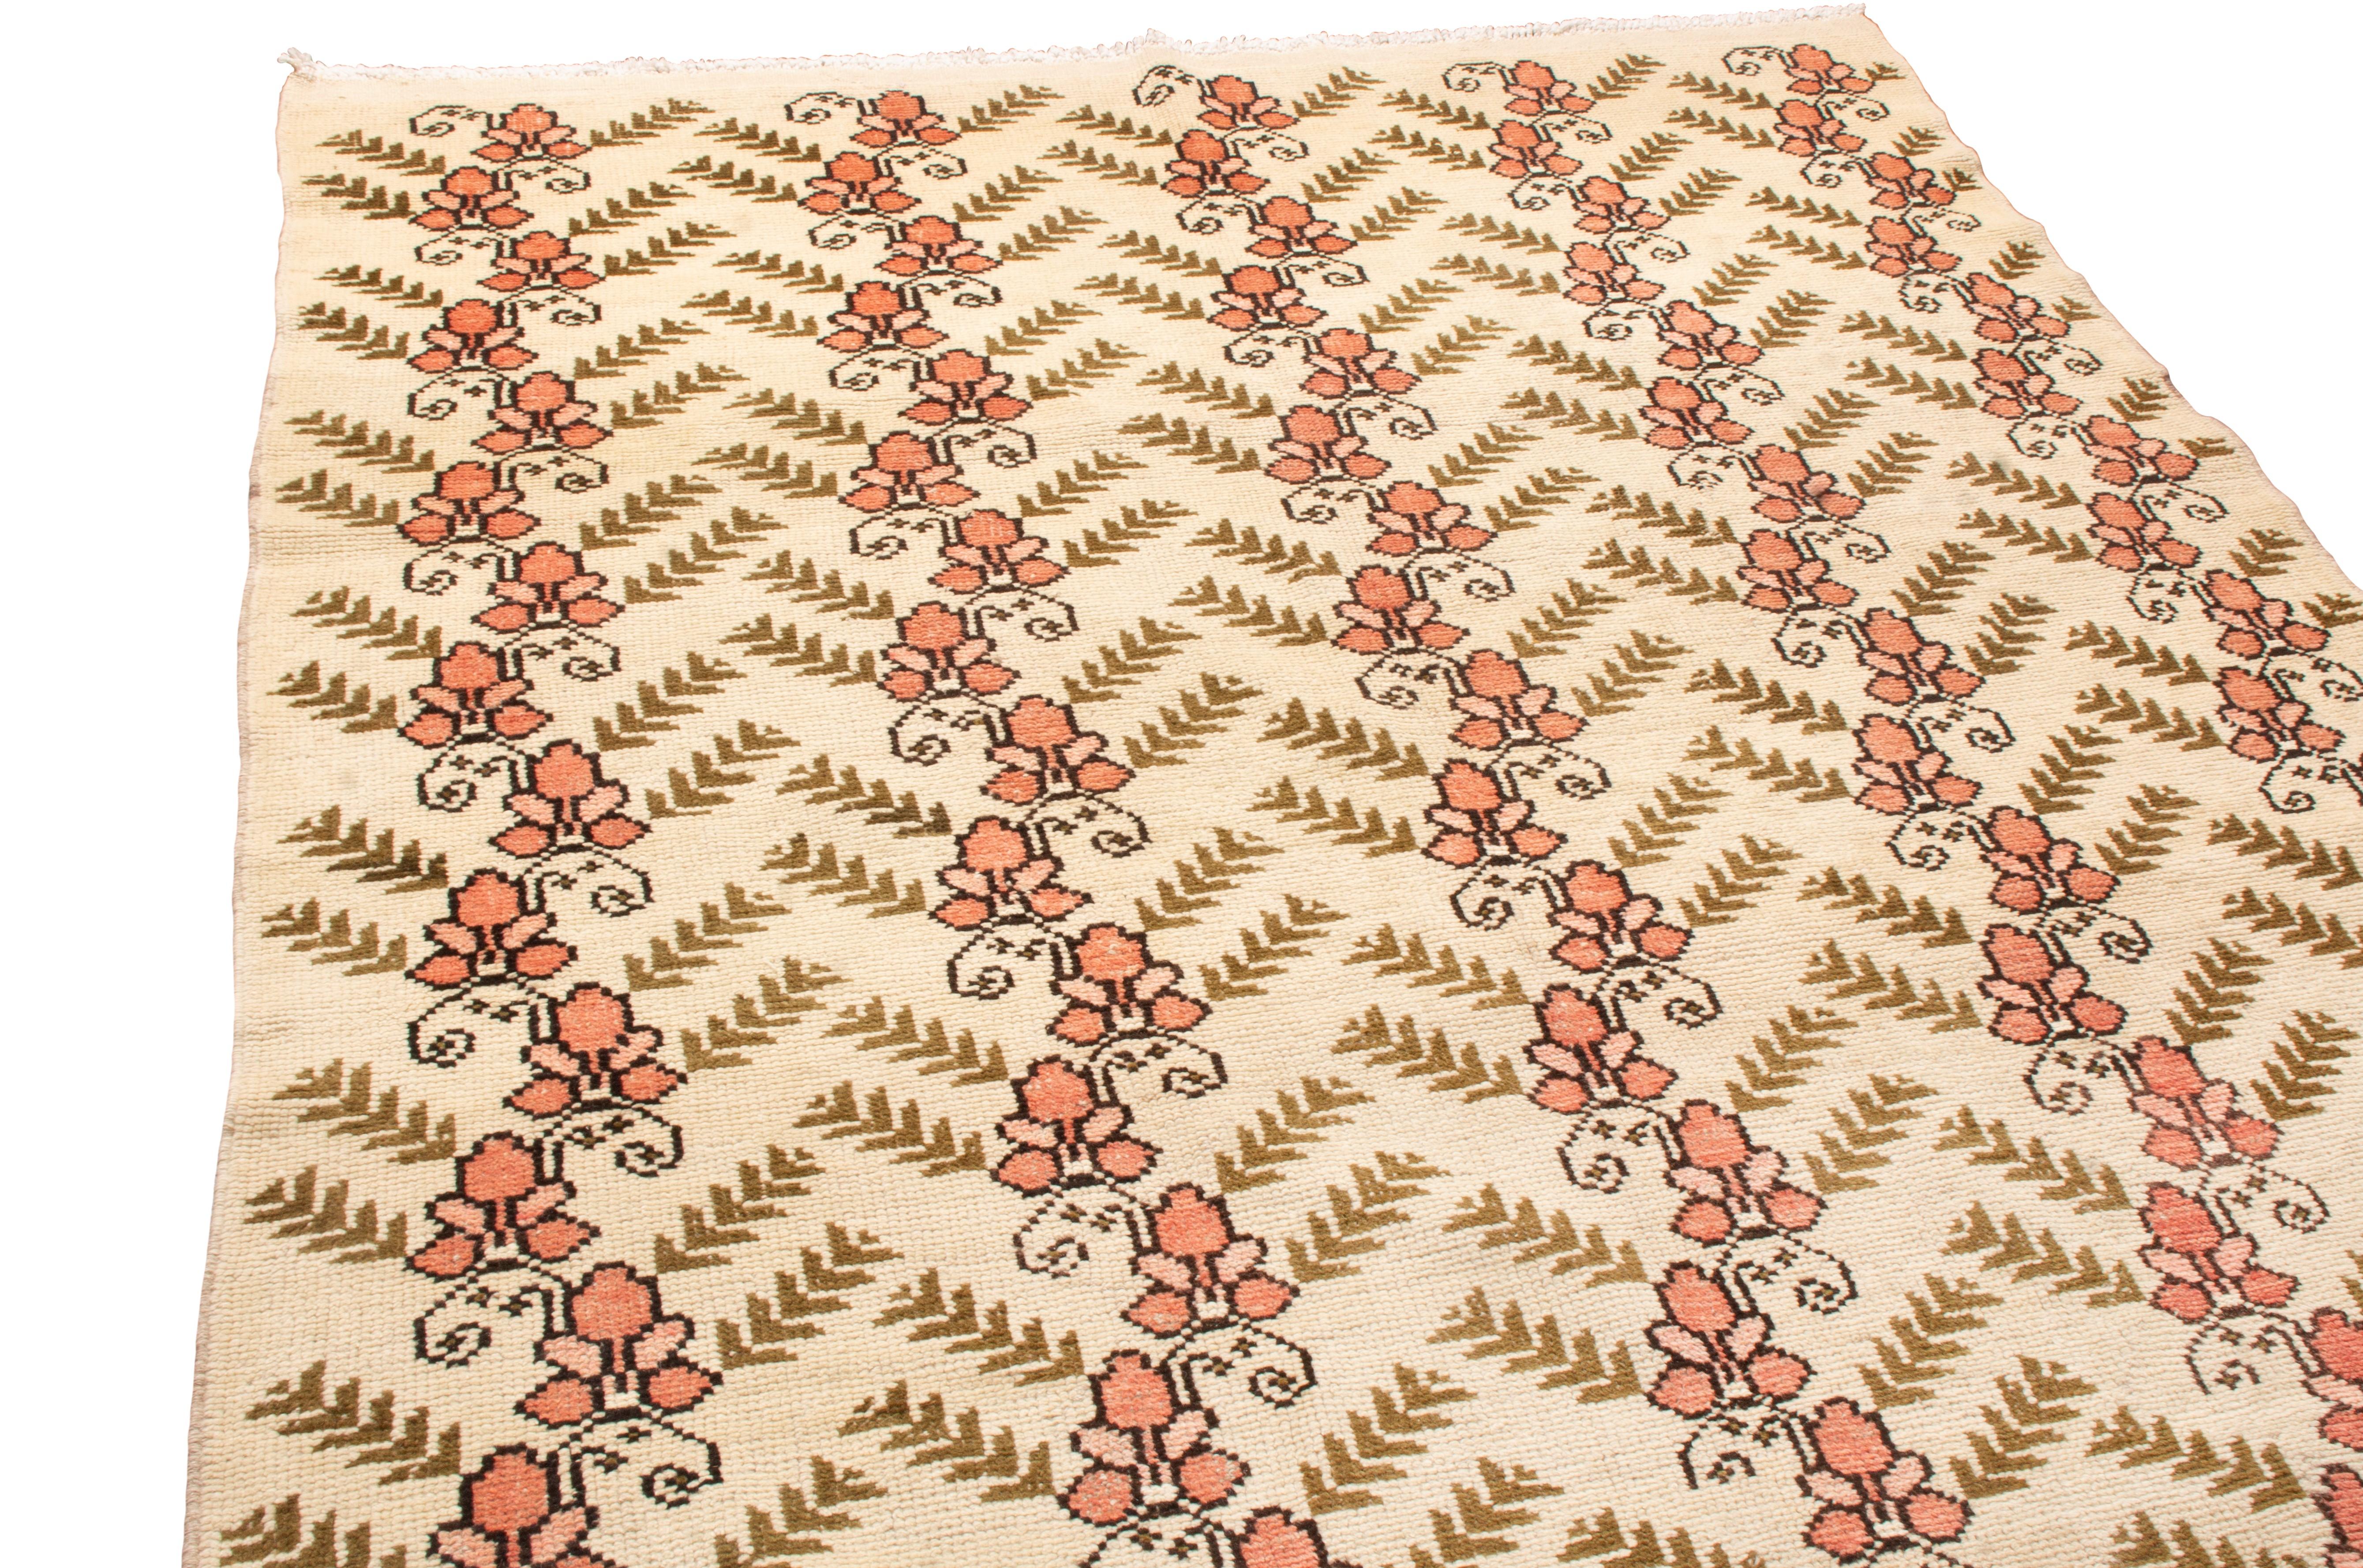 Dieser aus China stammende Wollteppich im Sparta-Design aus dem Jahr 1960 zeichnet sich durch einen sehr ungewöhnlichen Kontrast zwischen Farbe und Textur aus. Handgeknüpft aus strapazierfähiger Wolle, sind die hoch stilisierten blühenden